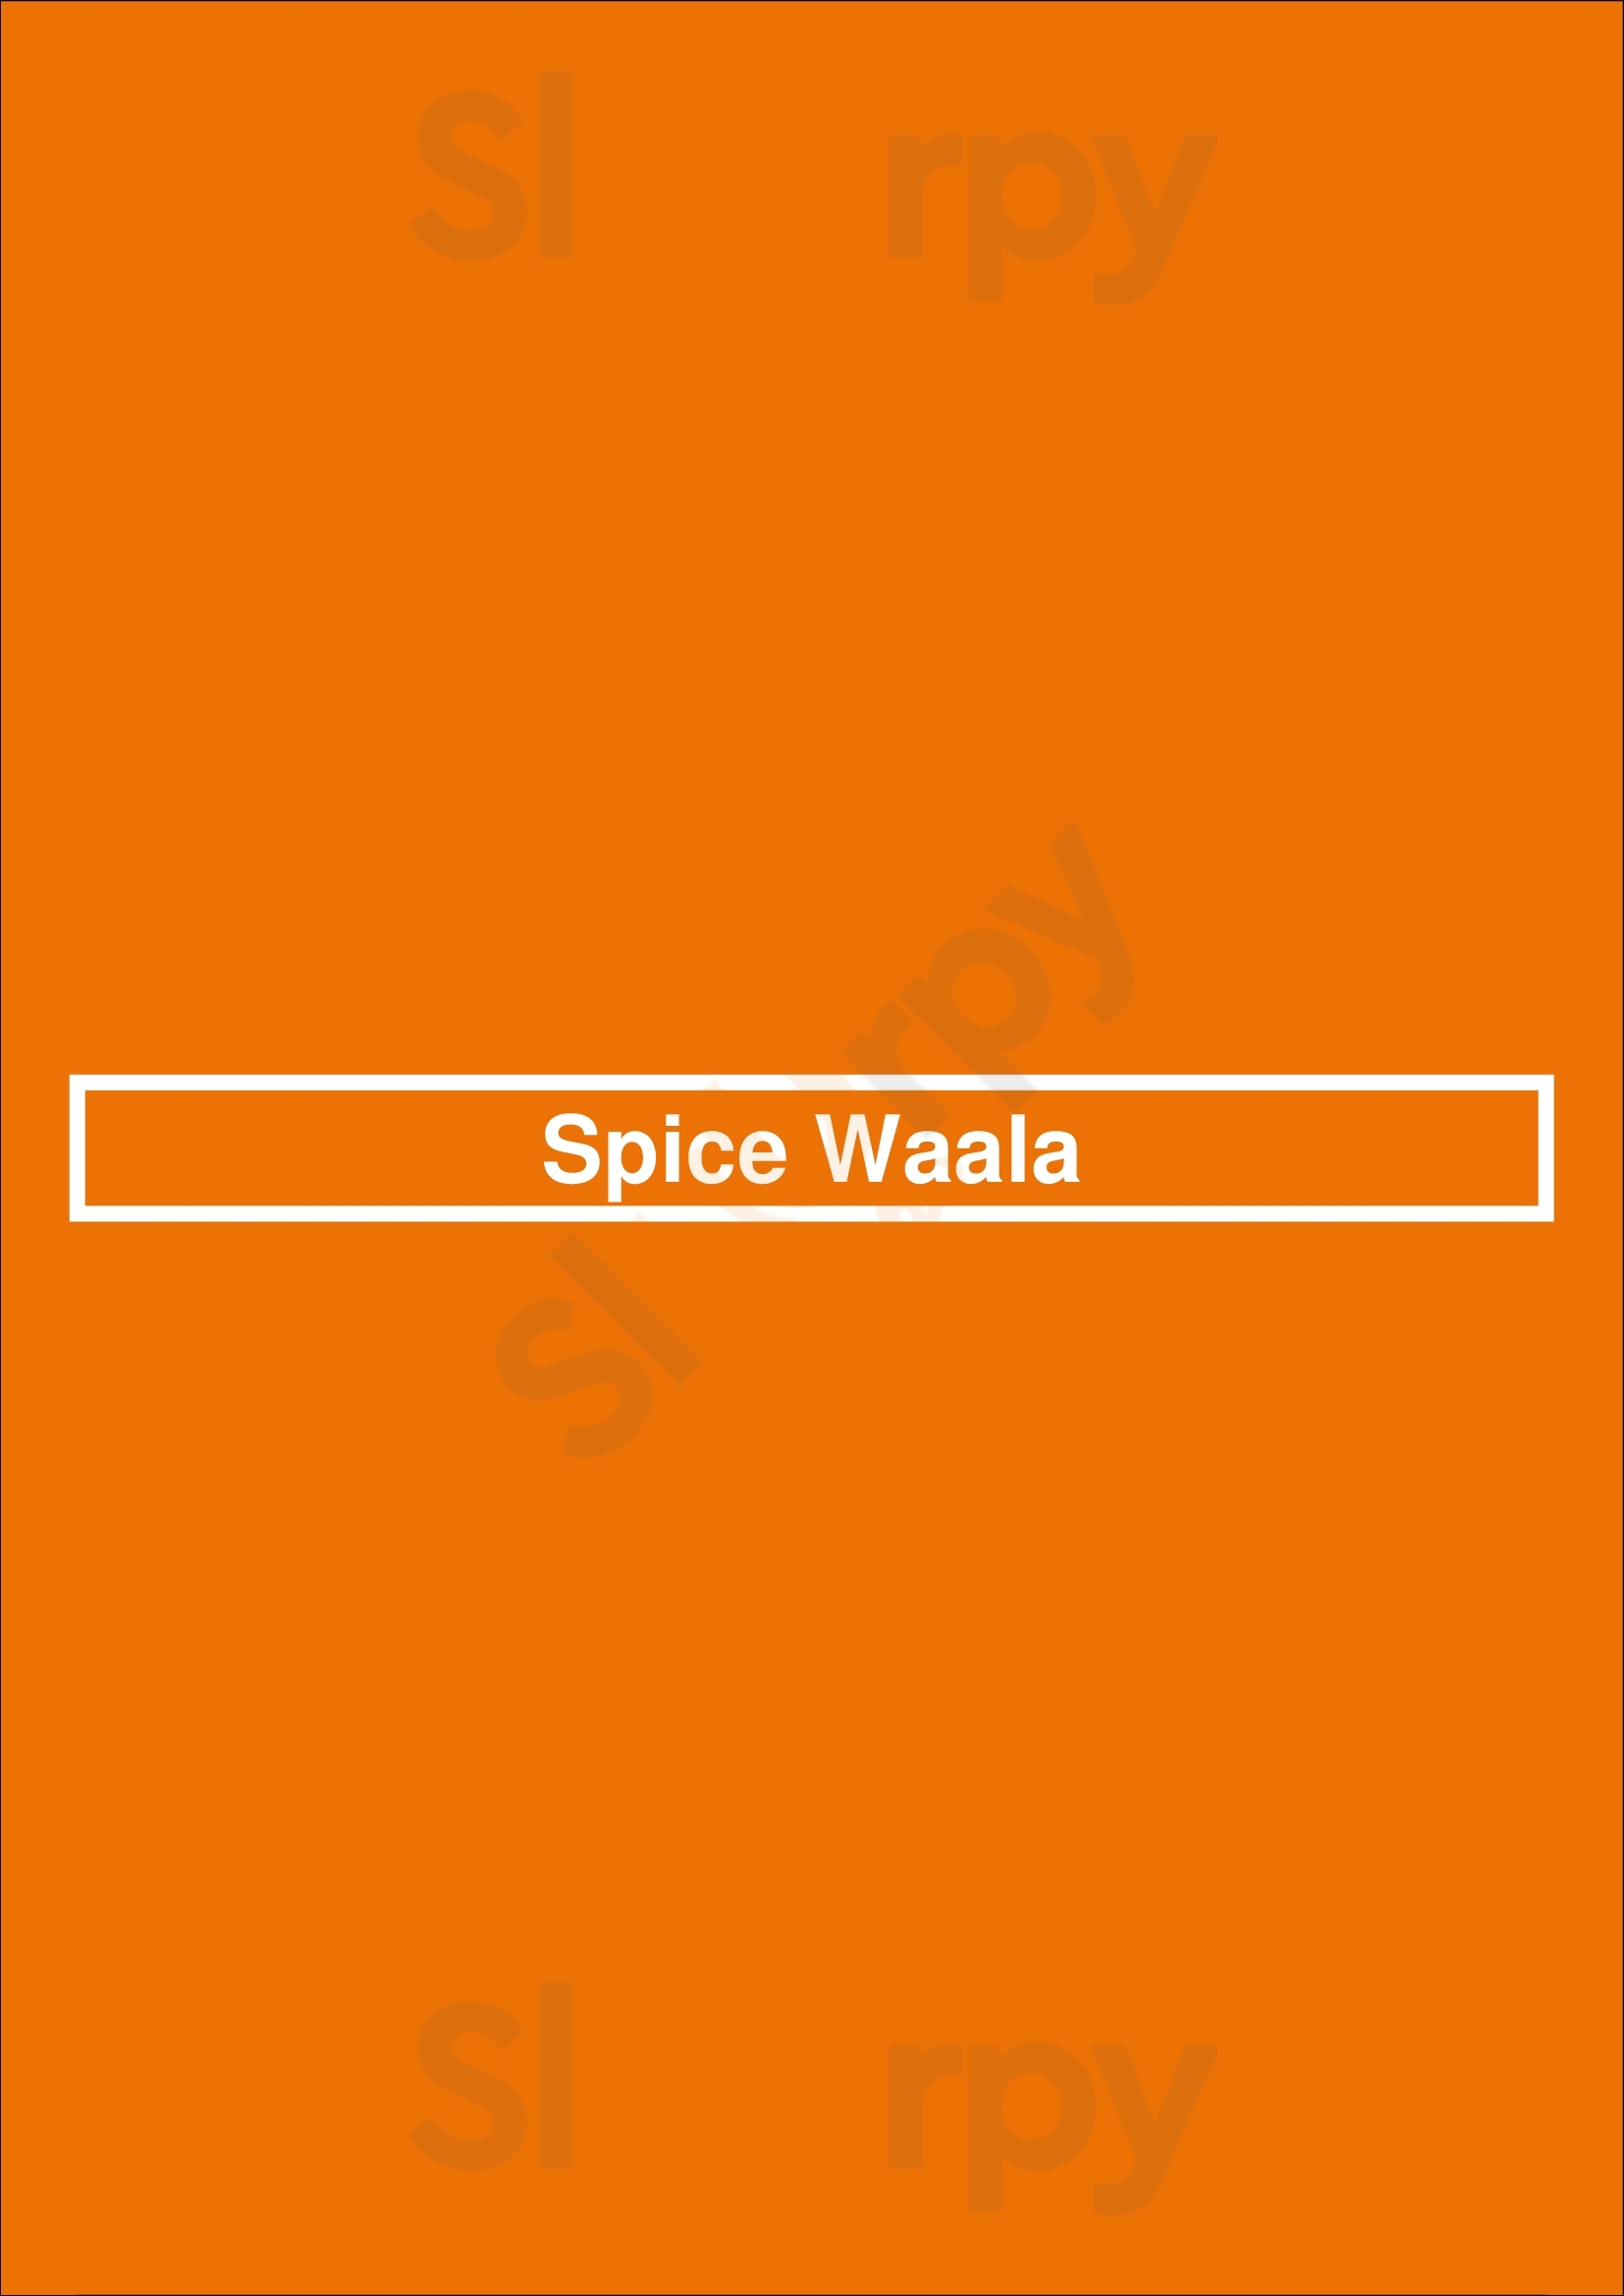 Spice Waala Seattle Menu - 1